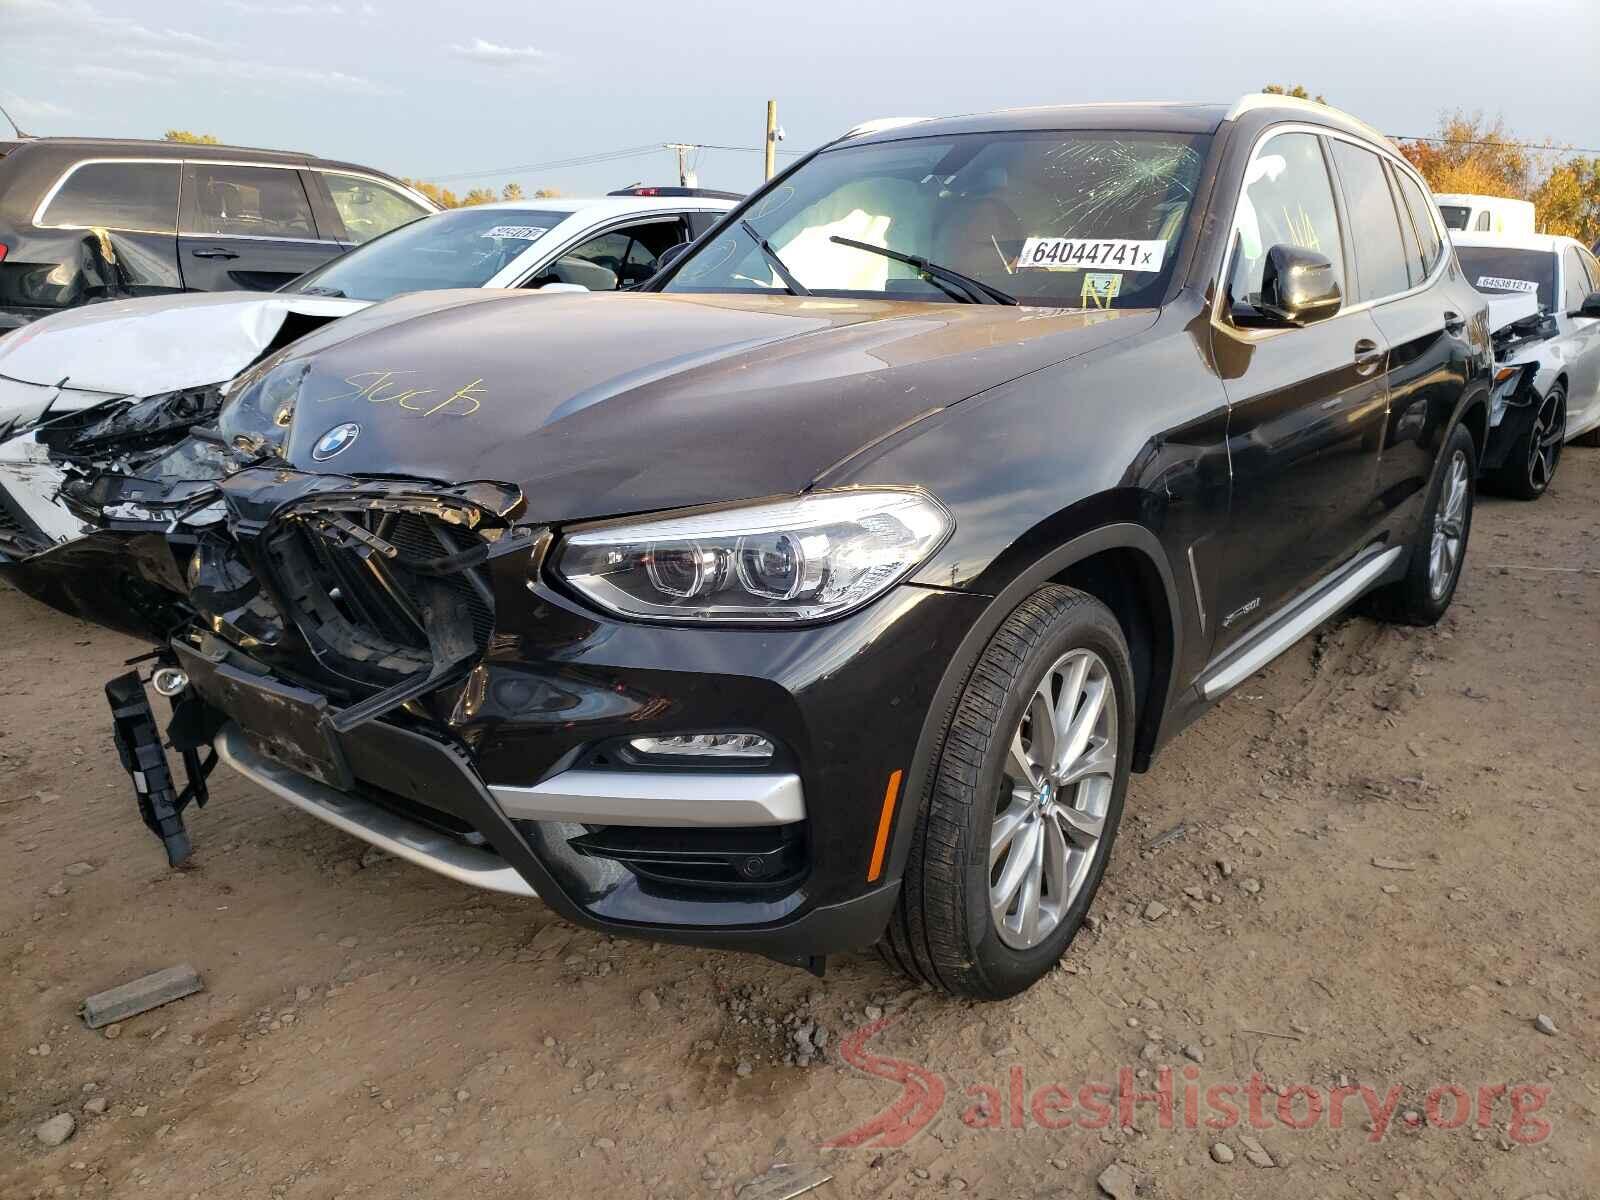 5UXTR9C52JLD61052 2018 BMW X3